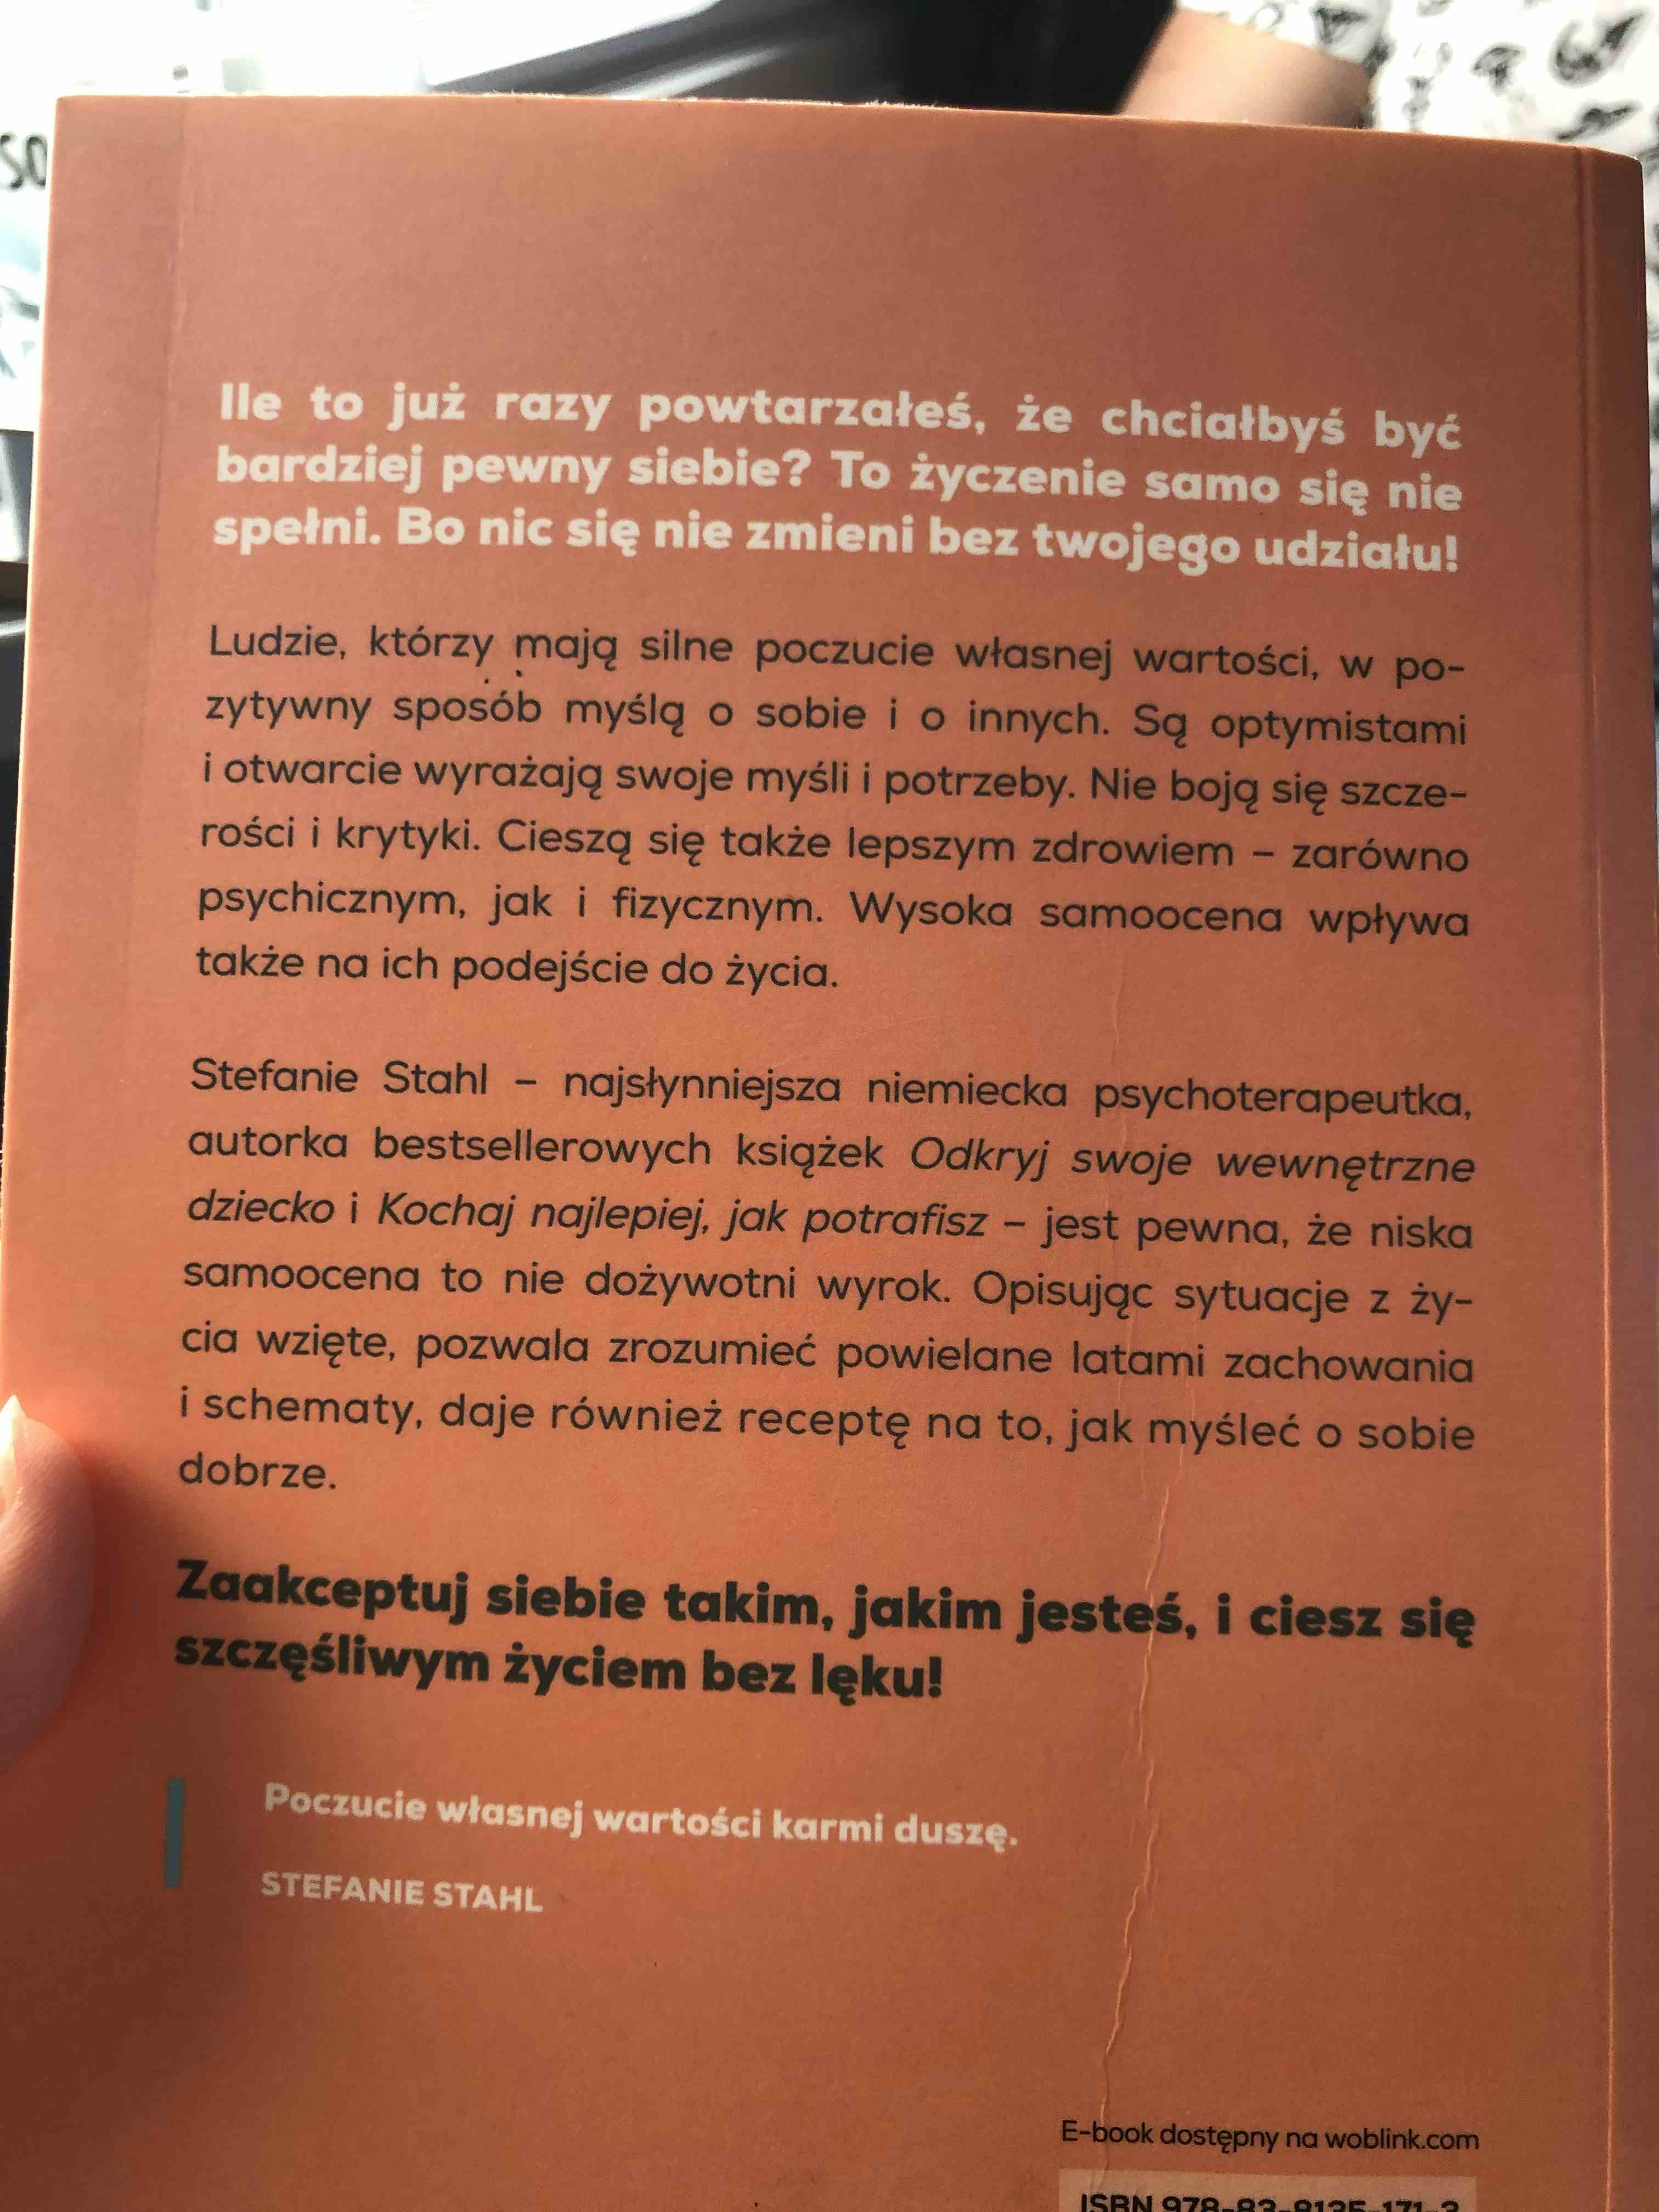 Primary picture of Książka ,,Jak myśleć o sobie dobrze”